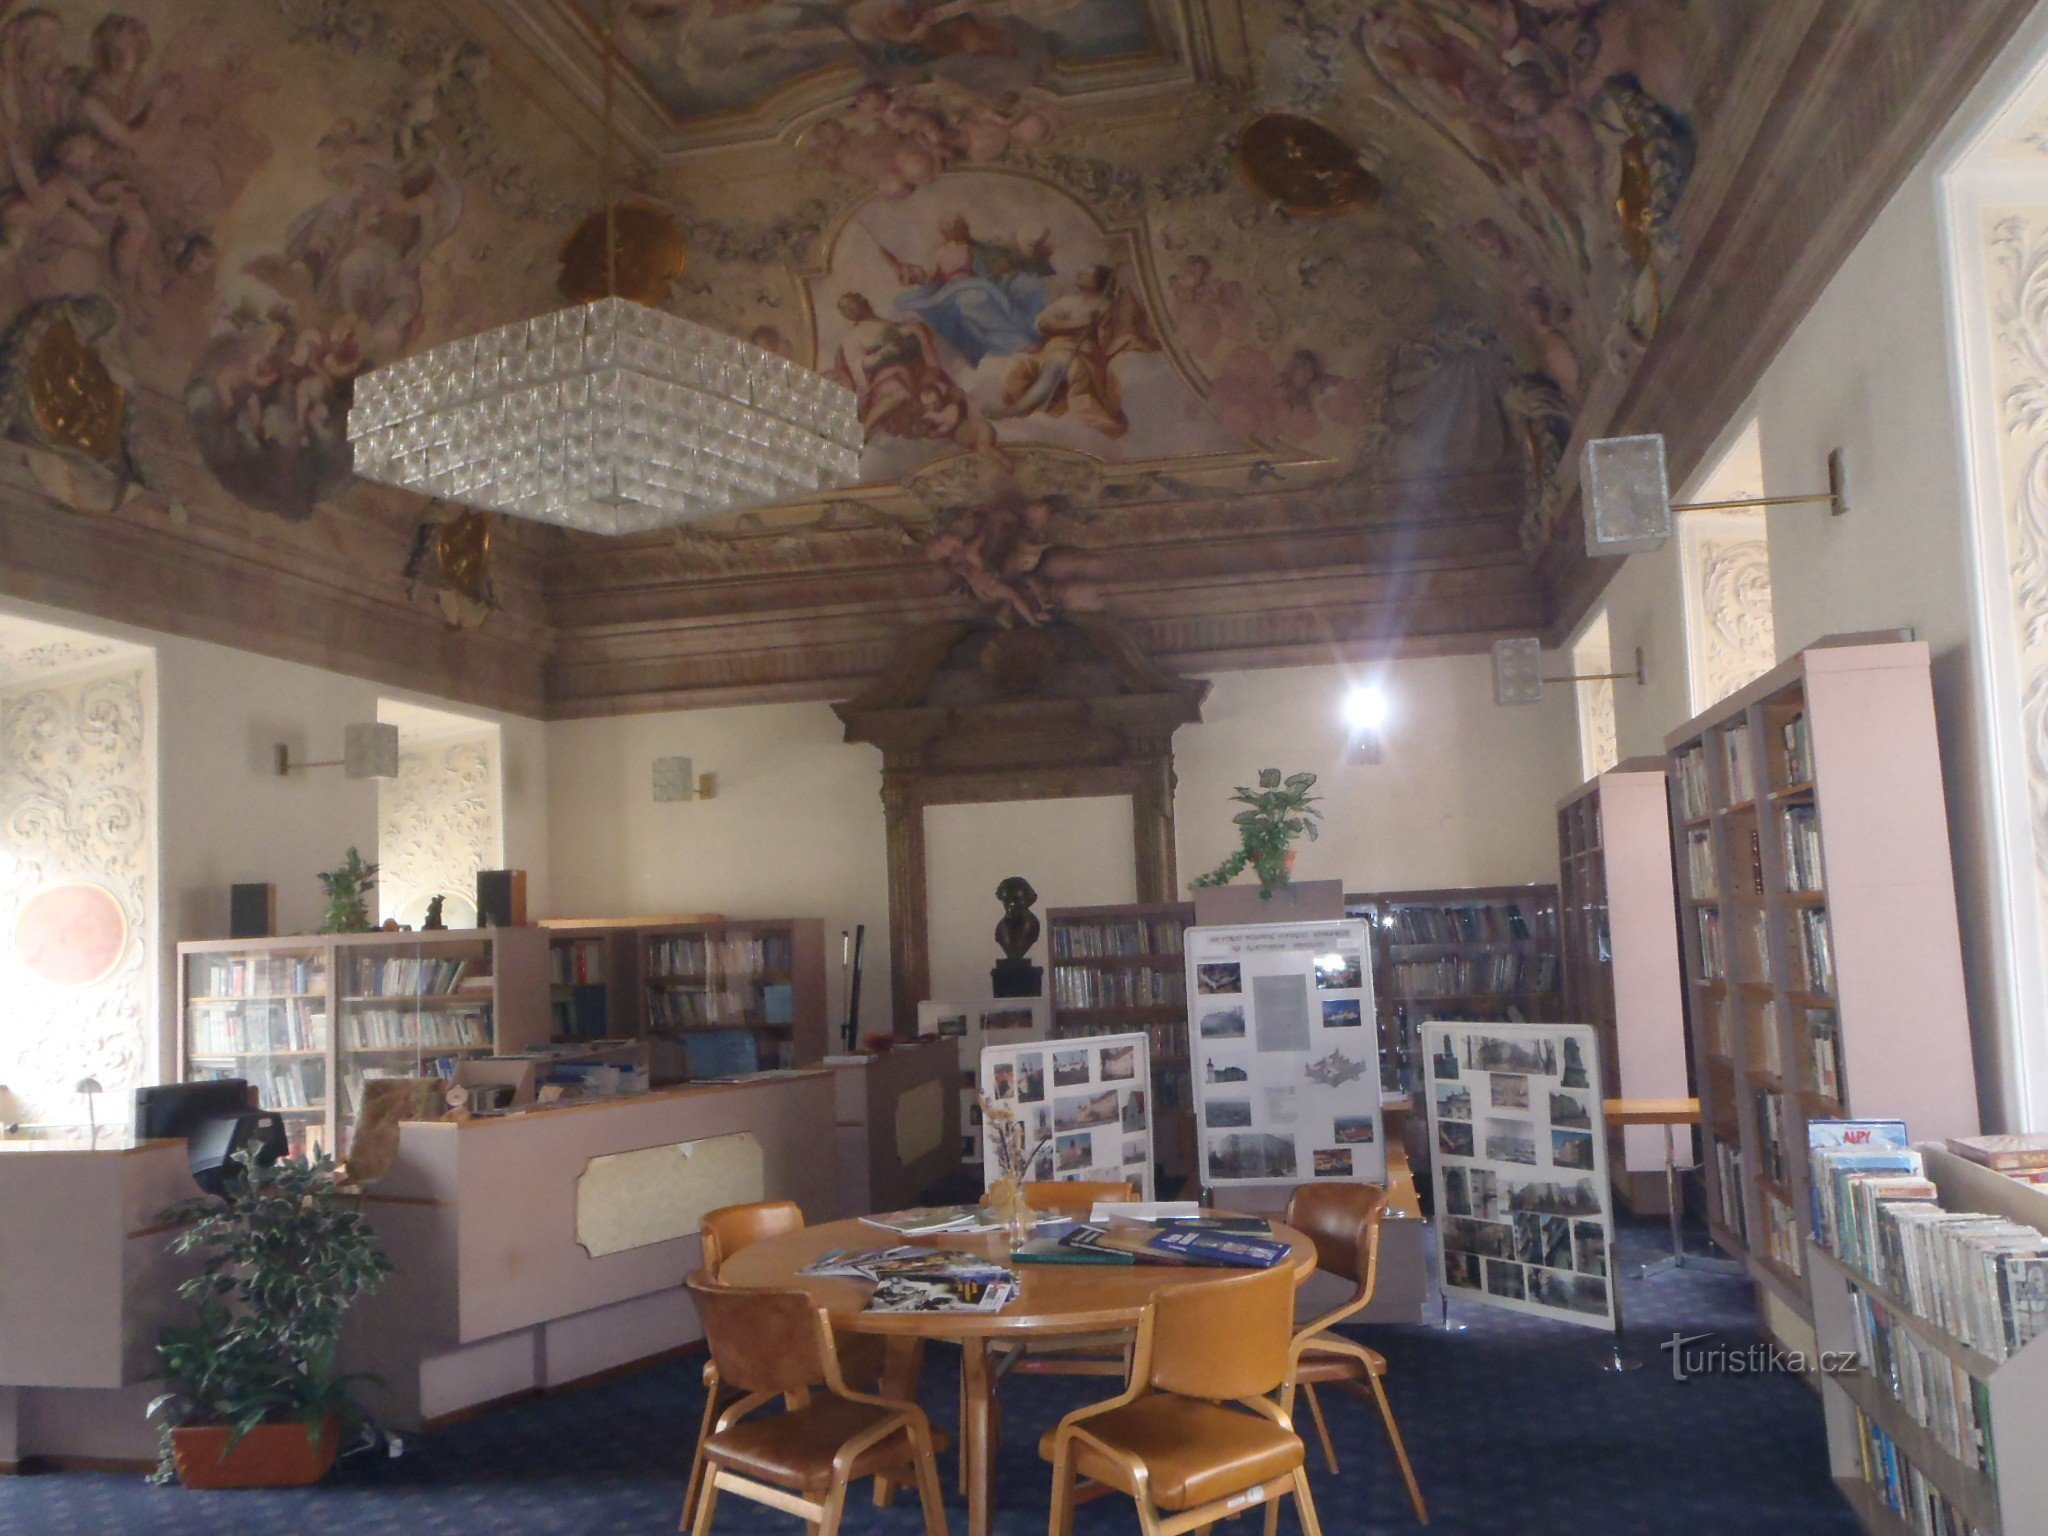 Samostanska knjižnica